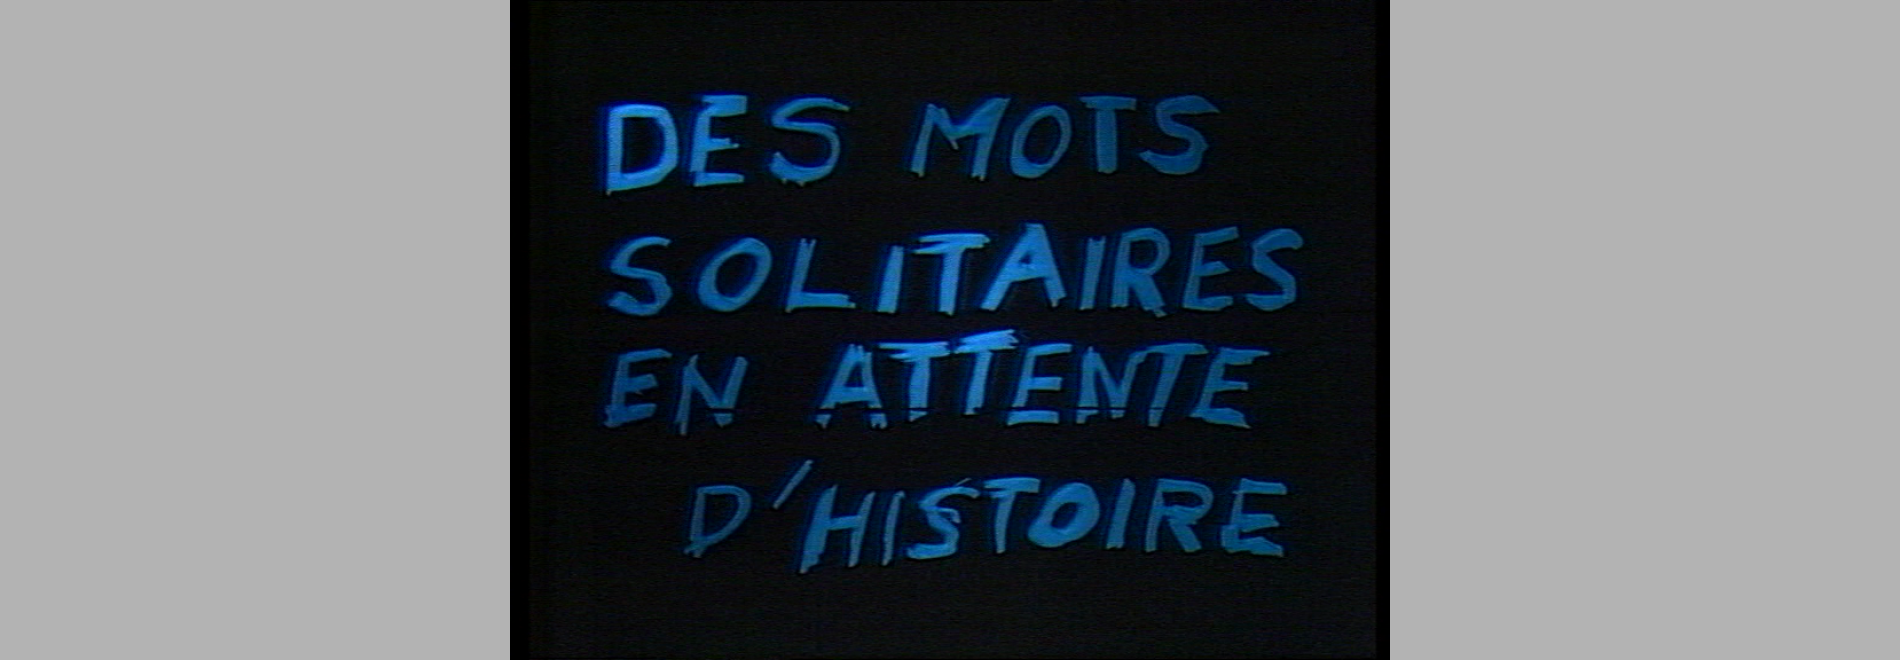 Regarde Jonathan/Jean Louvet son oeuvre (Jean-Pierre Dardenne, Luc Dardenne, 1983)